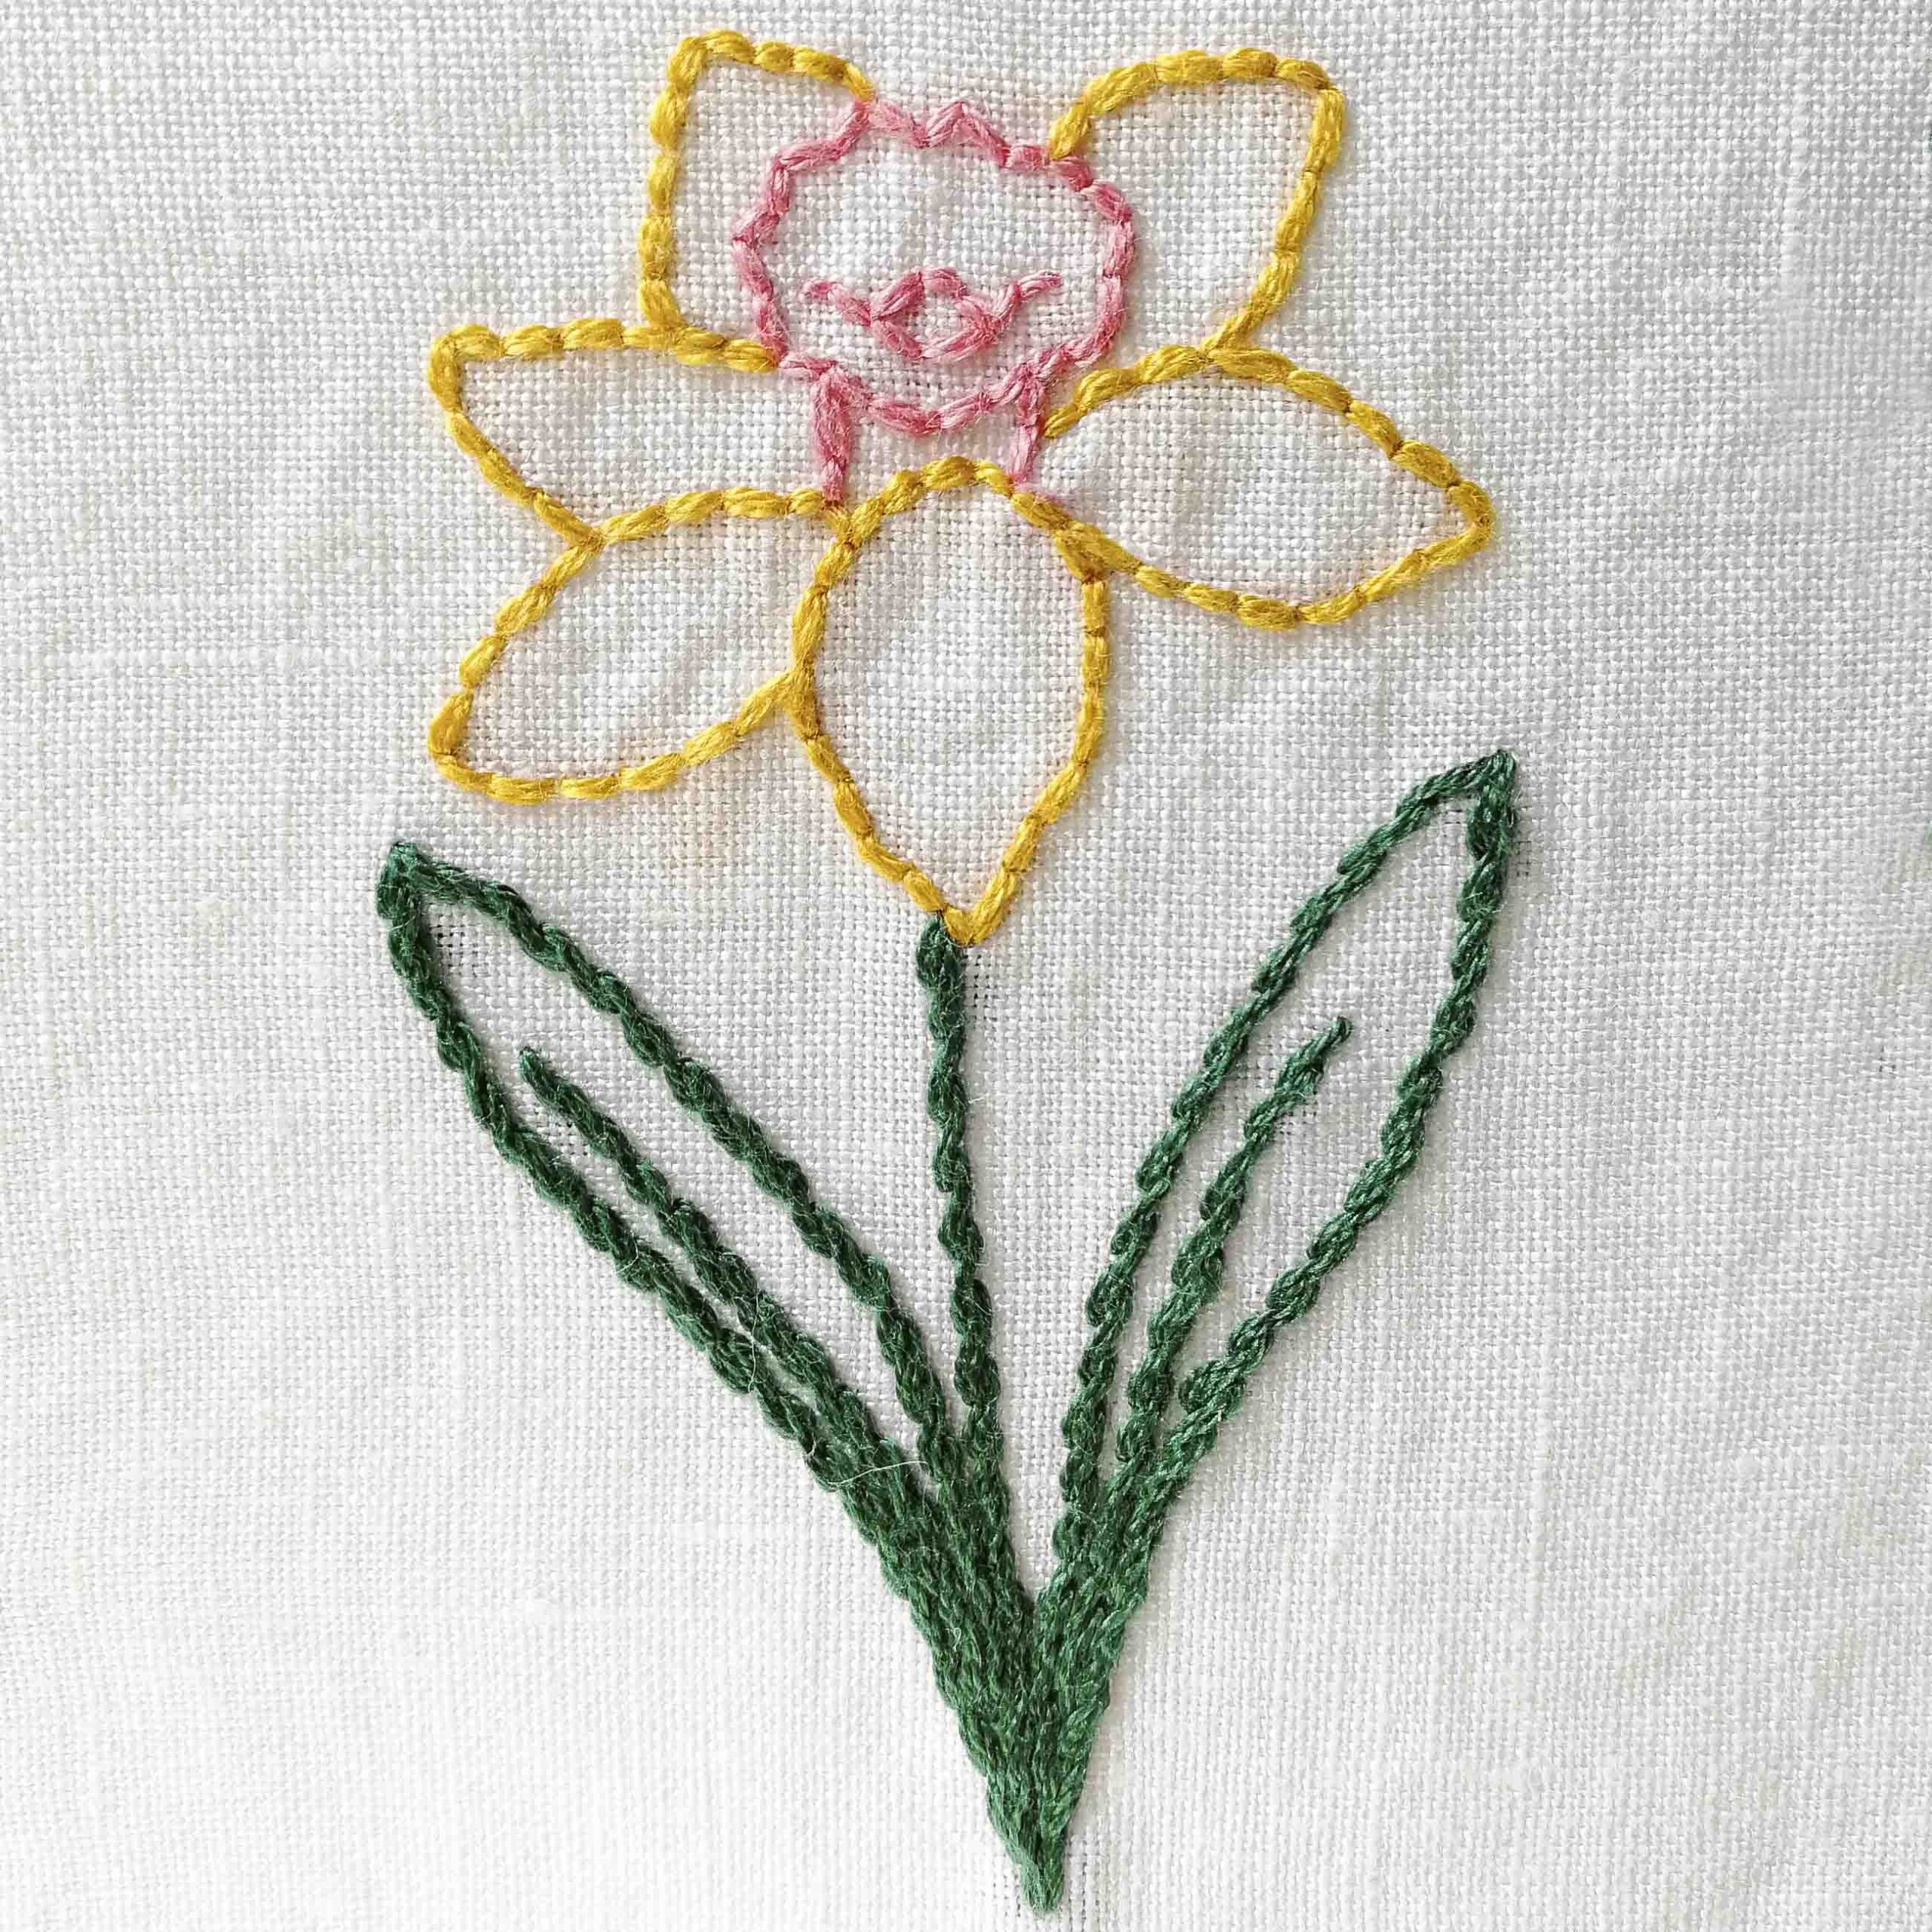 StephieAnn Daffodil Birth Flower March